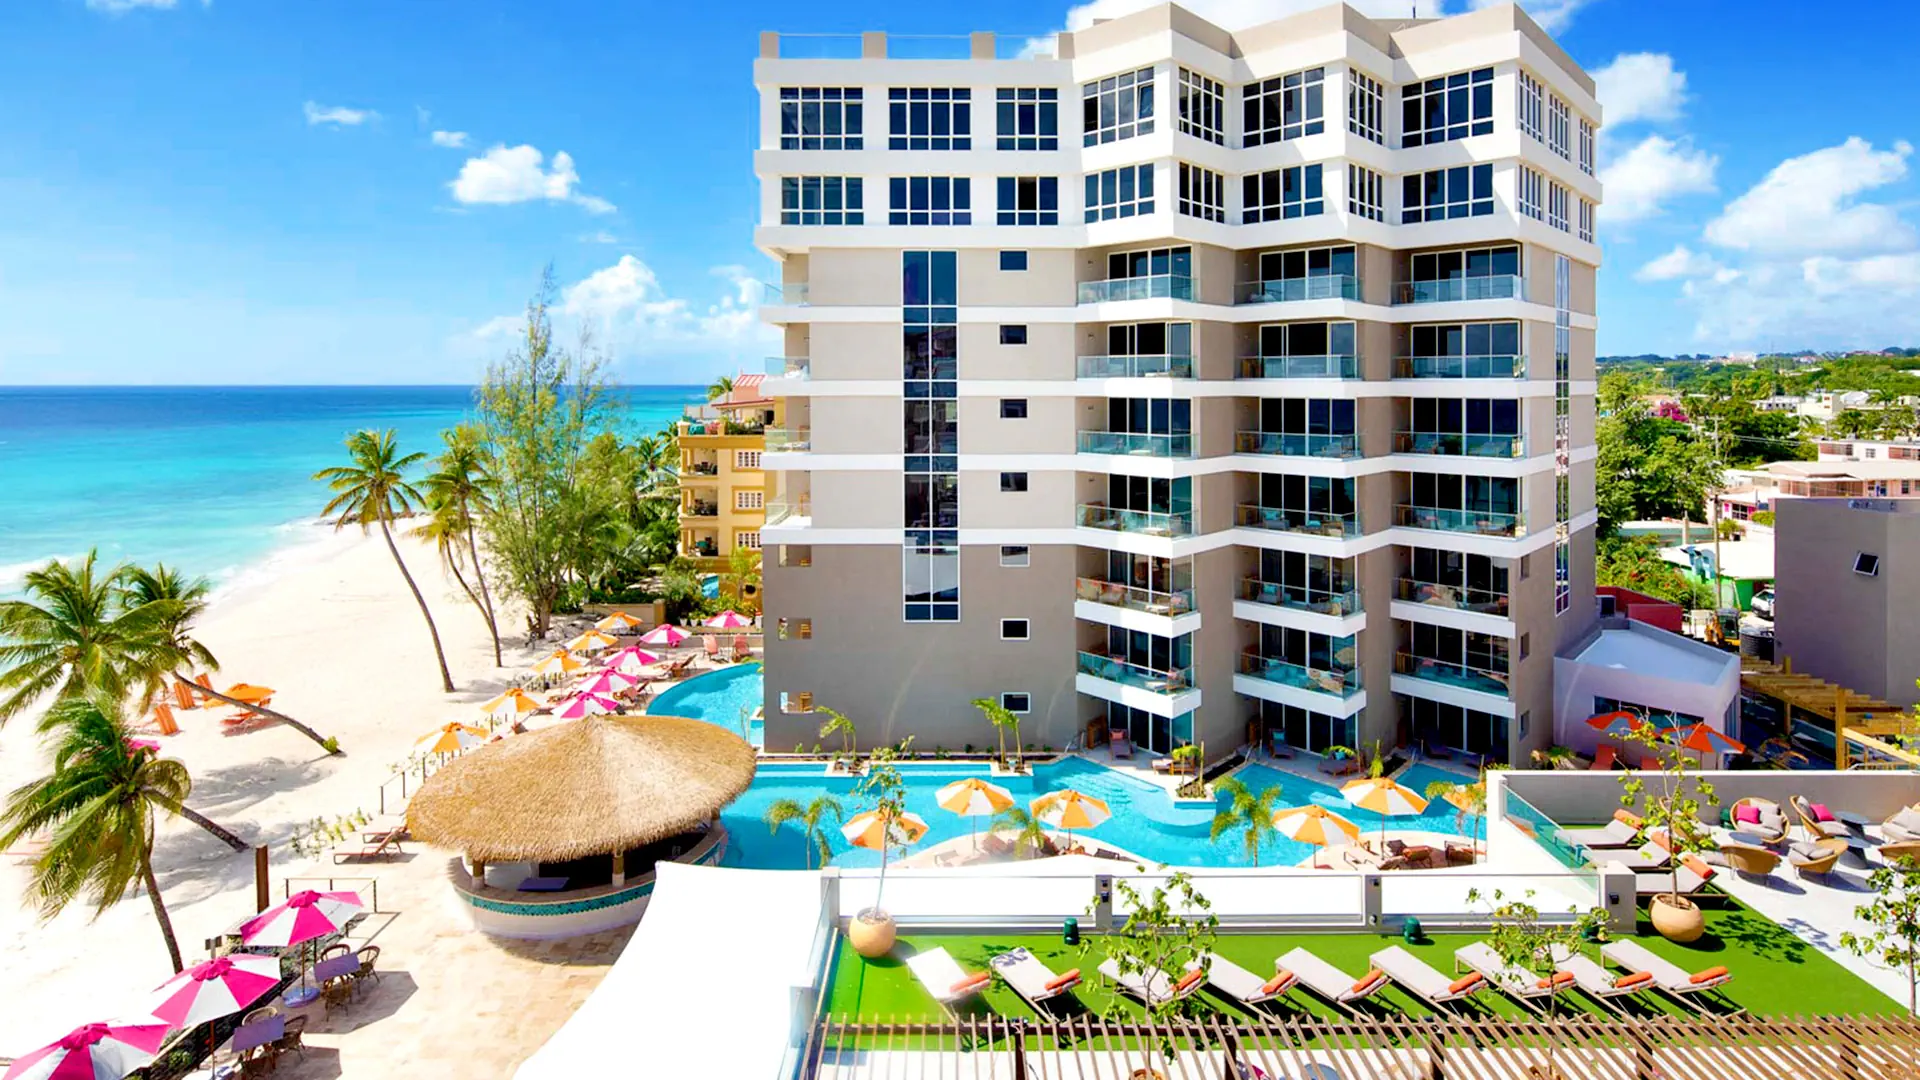 Karaiby Barbados Oistins O2 Beach Club & Spa